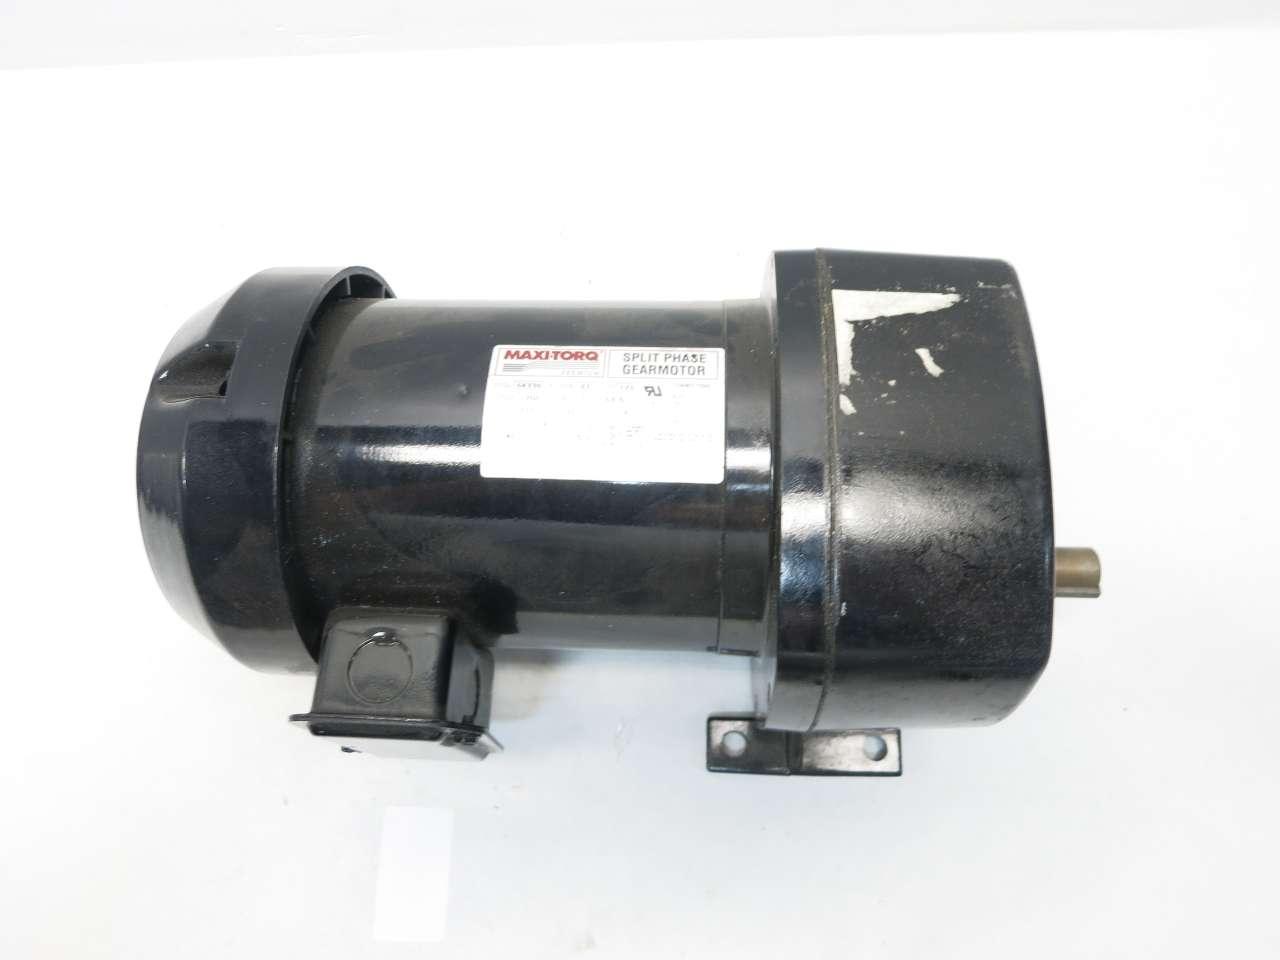 Details about   COLE-PARMER GEARMOTOR 115V 60 RPM 900-1957 00359DU D136-11334-8 D2504-0029 NEW 